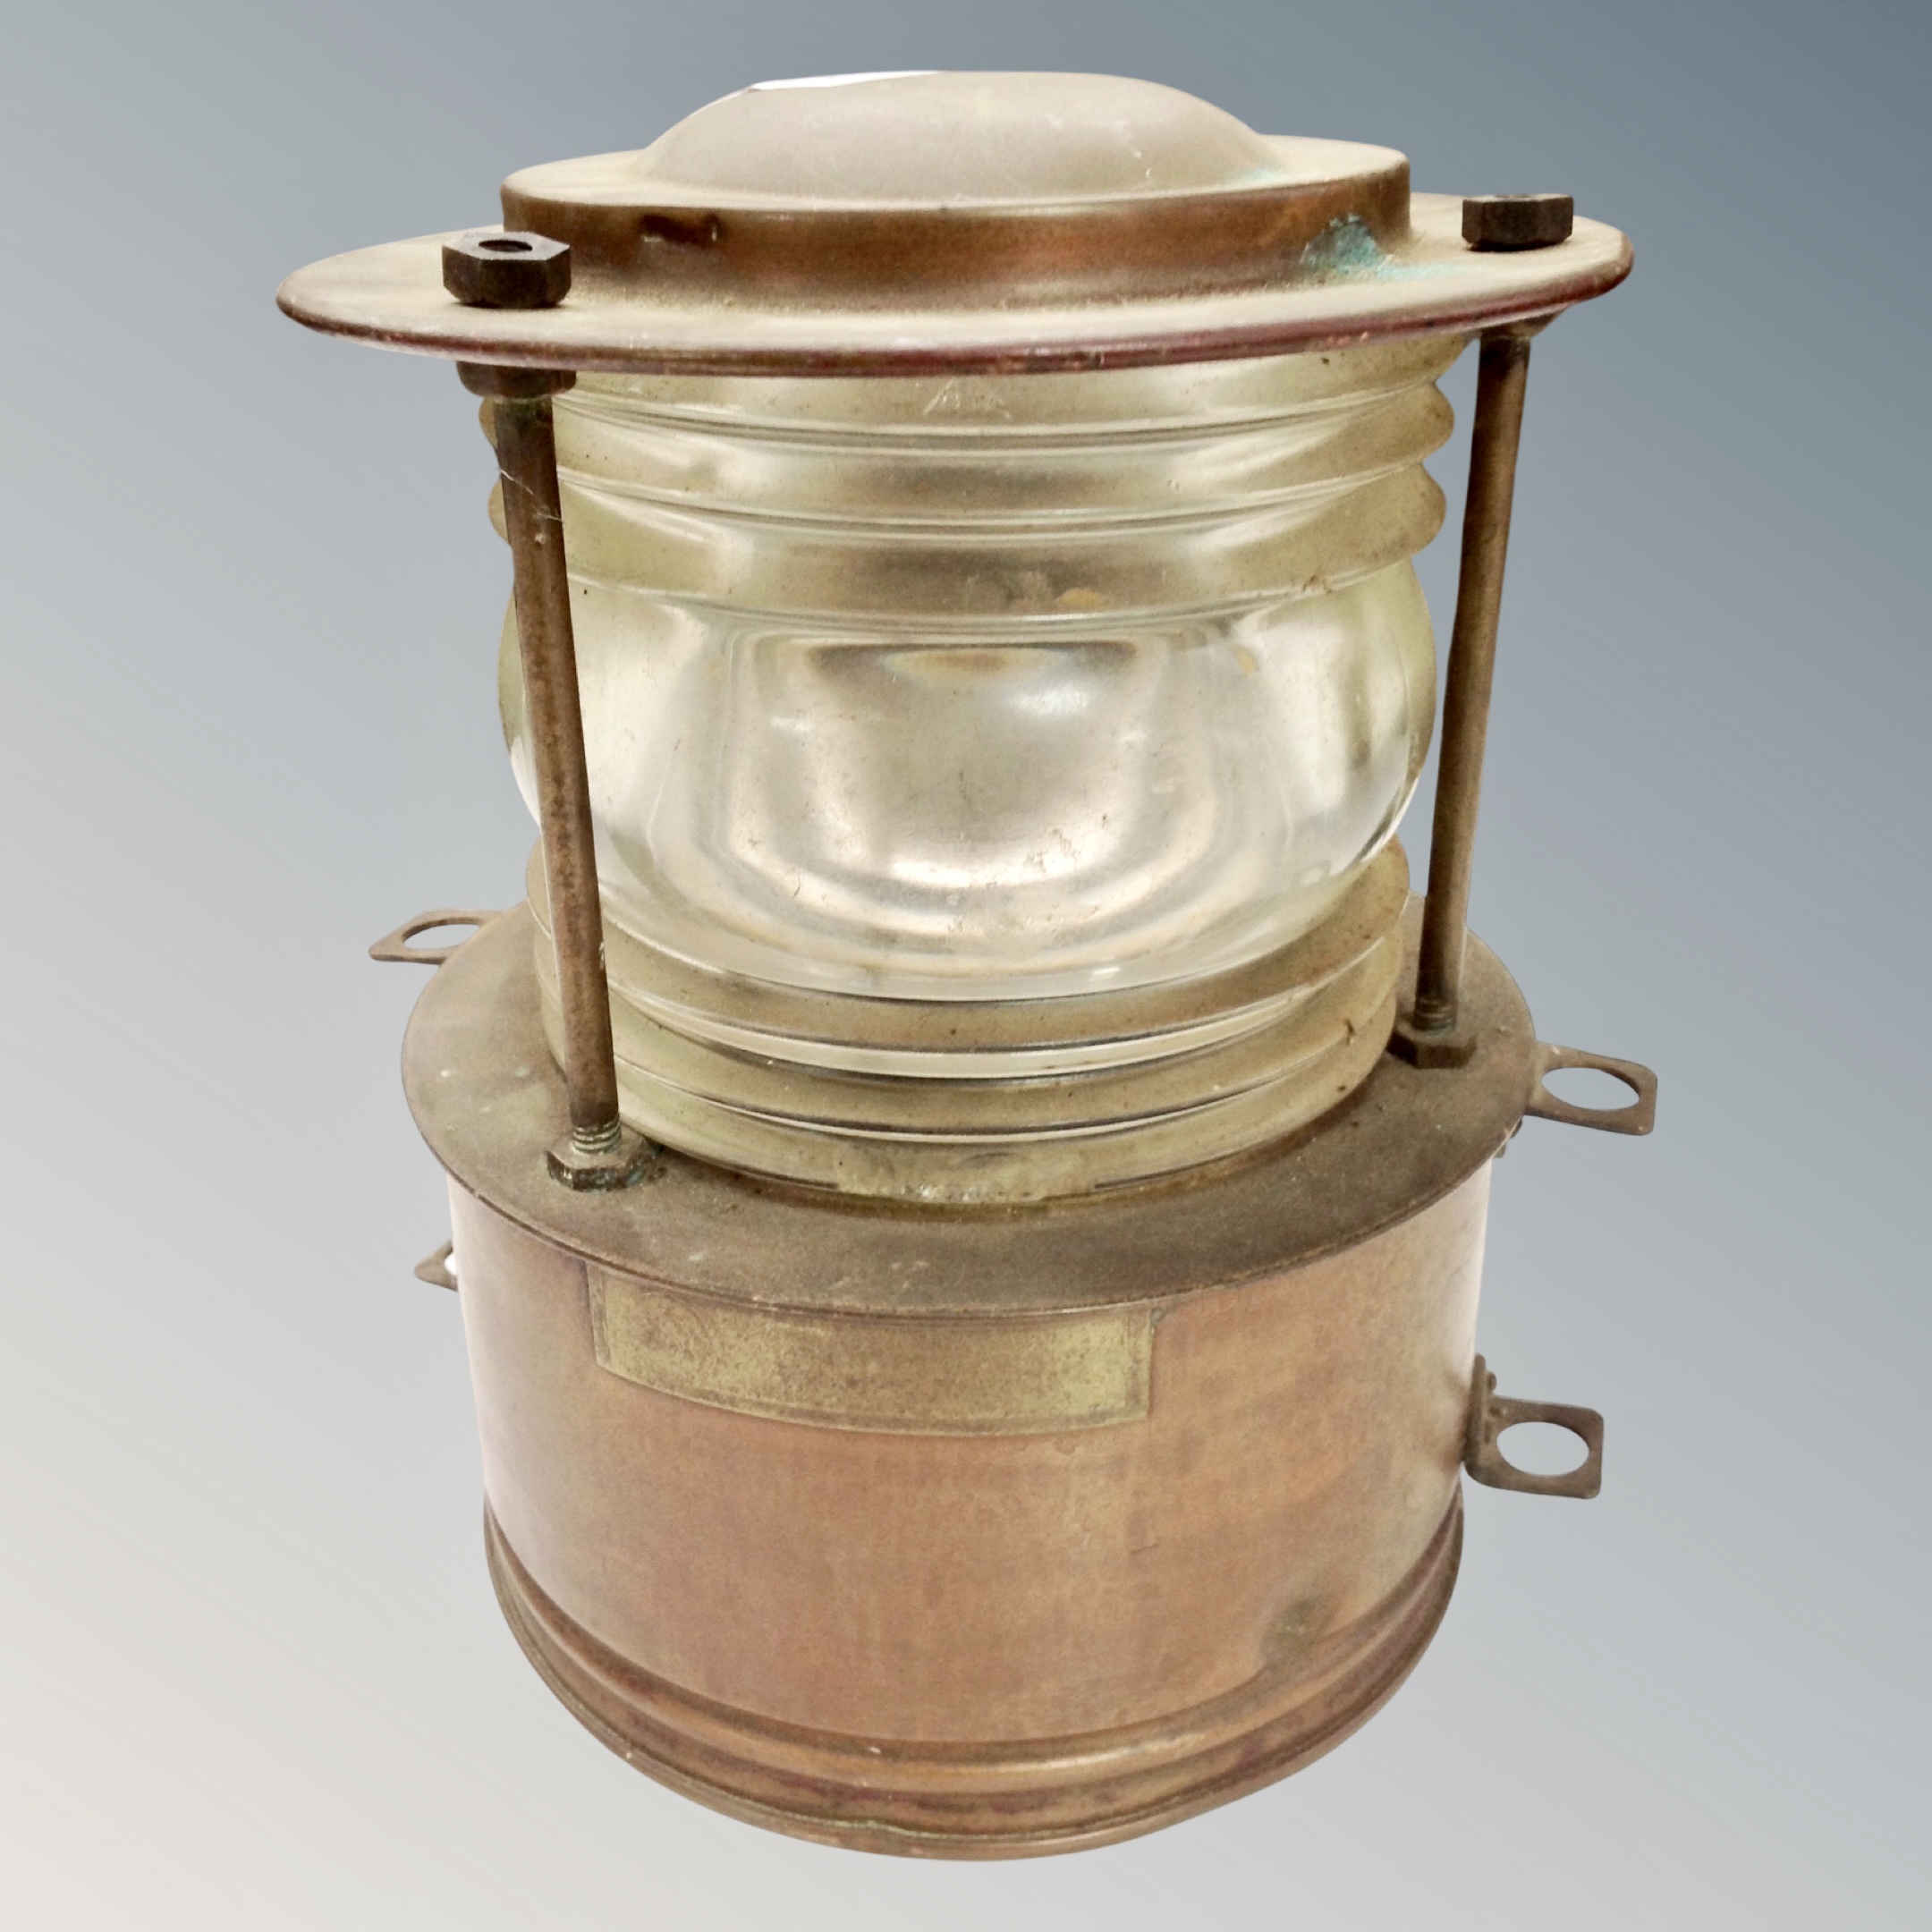 A copper ship's lamp